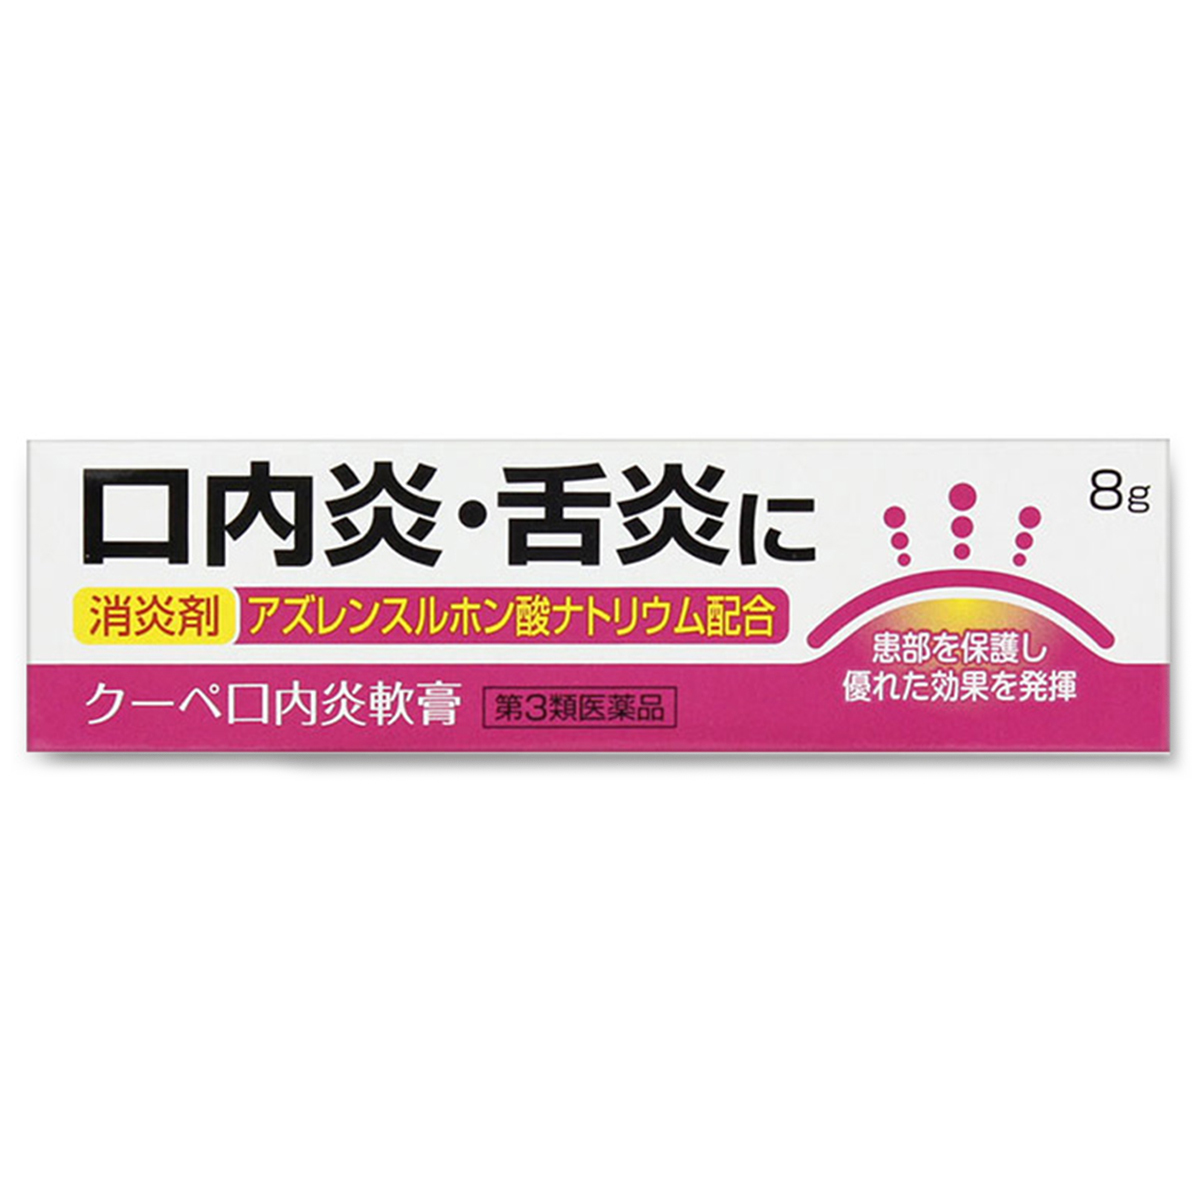 福地製薬 クーペ口内炎軟膏 8g×1個の商品画像